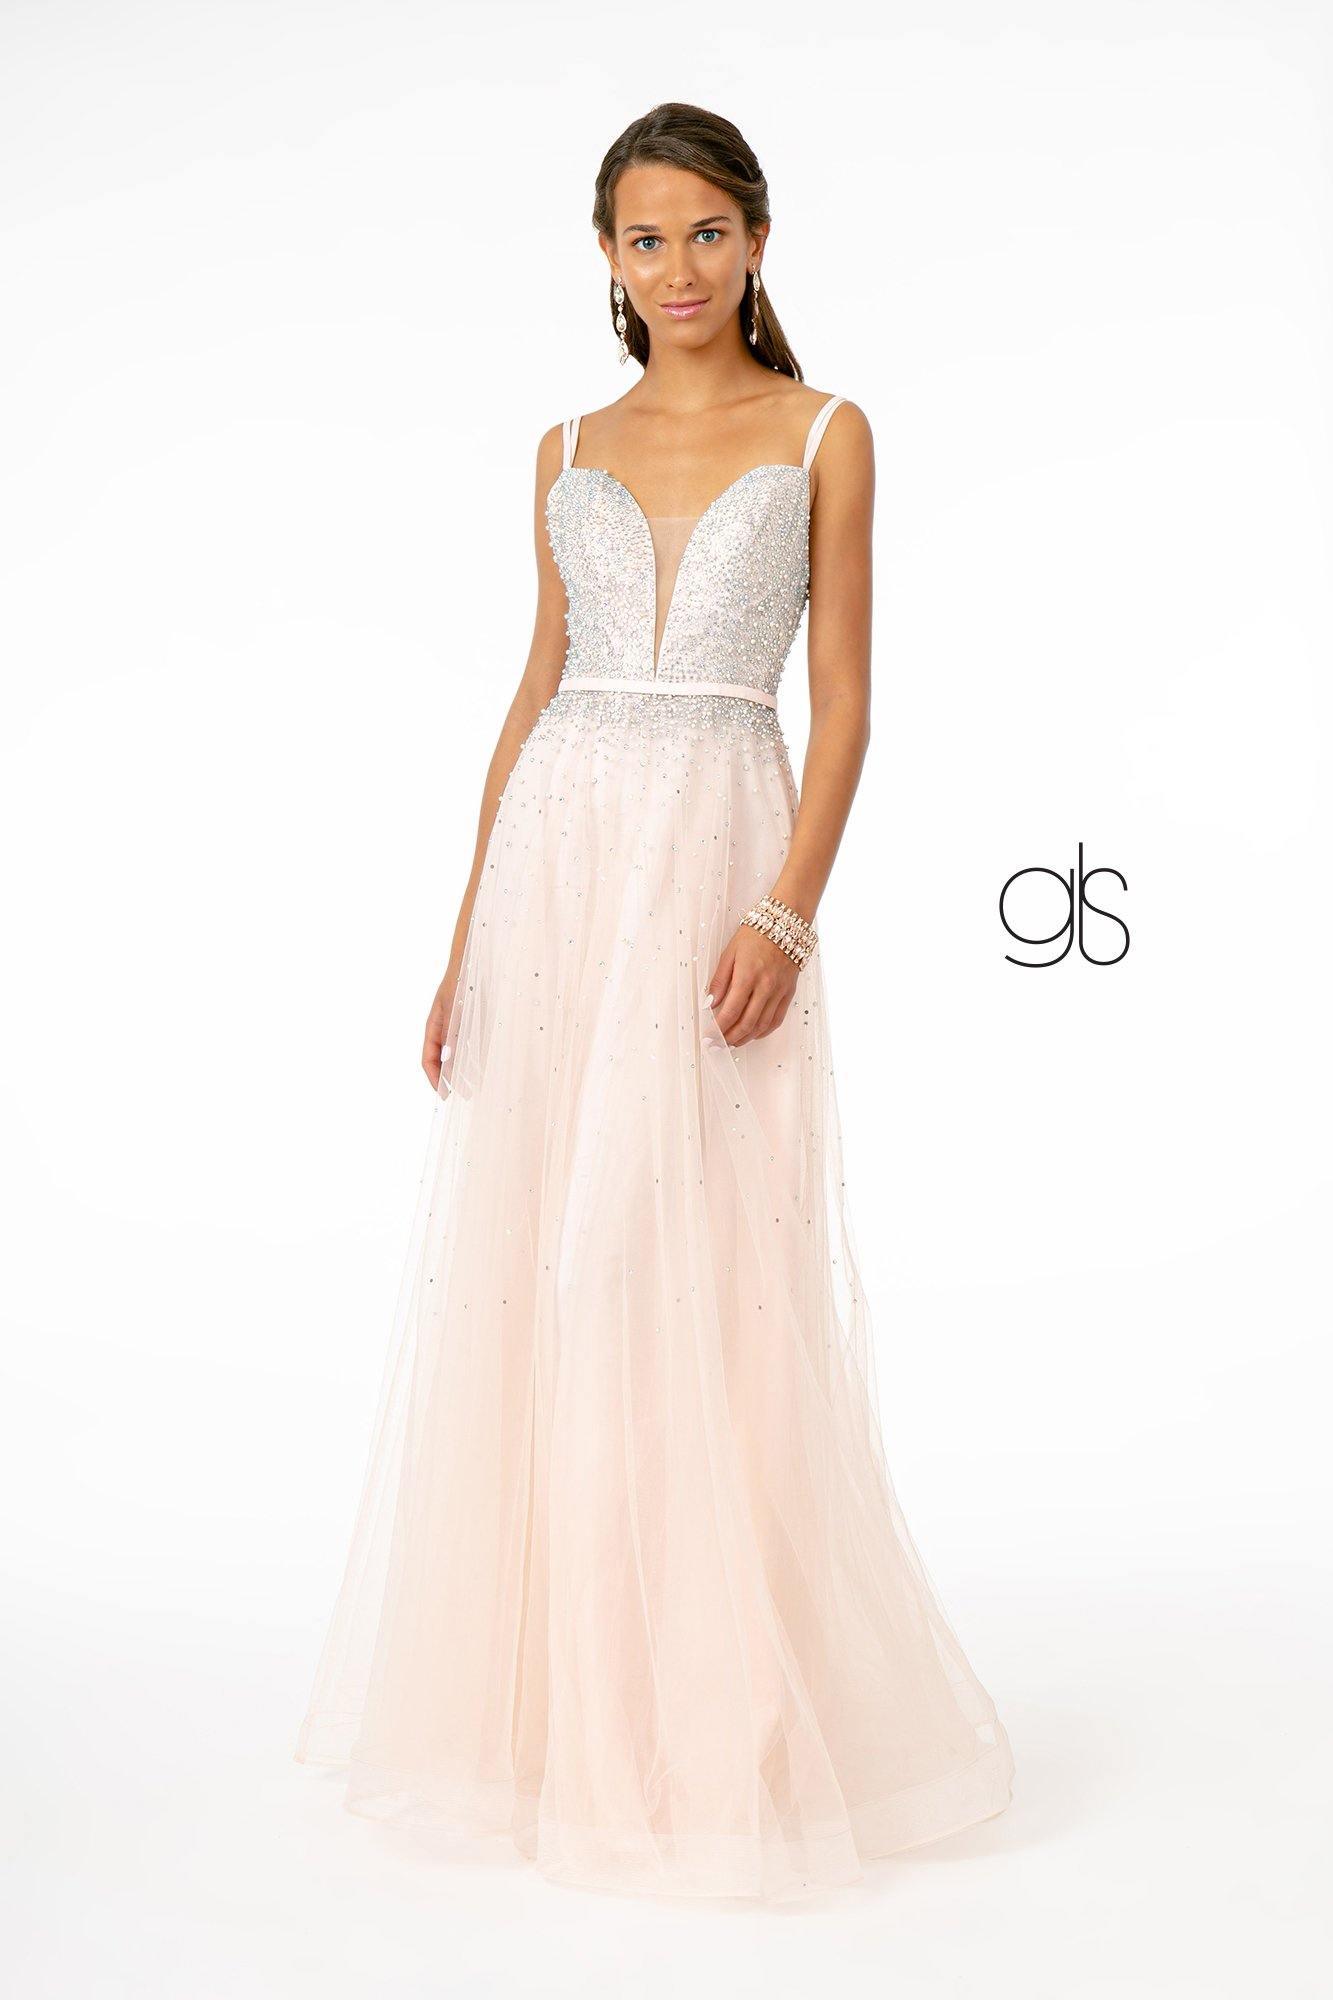 Jewel Embellished Bodice MeshLong Prom Dress Sale - The Dress Outlet